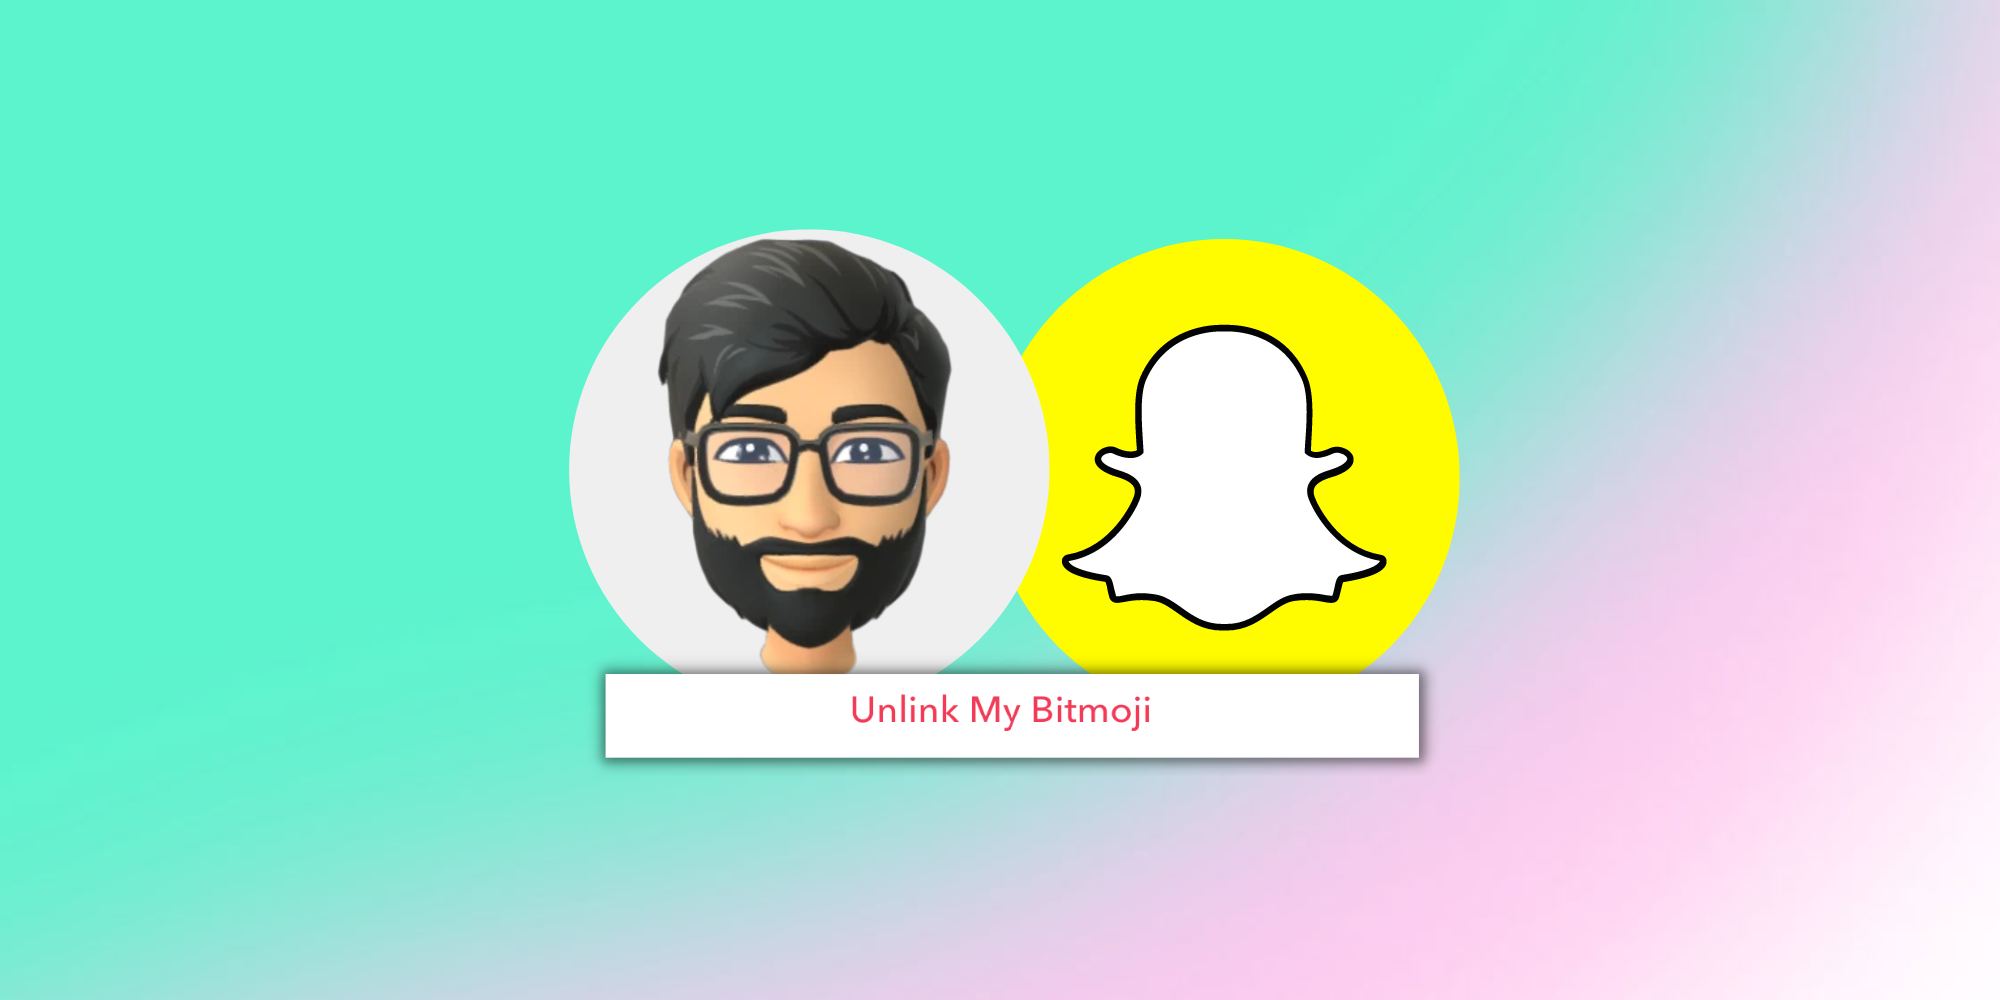 Nếu bạn muốn thay đổi hình ảnh trên Snapchat của mình, hãy xóa Bitmoji hiện tại và tạo một avatar mới độc đáo hơn. Hãy thử các tính năng mới và đa dạng của Bitmoji để thể hiện cá tính của bạn!